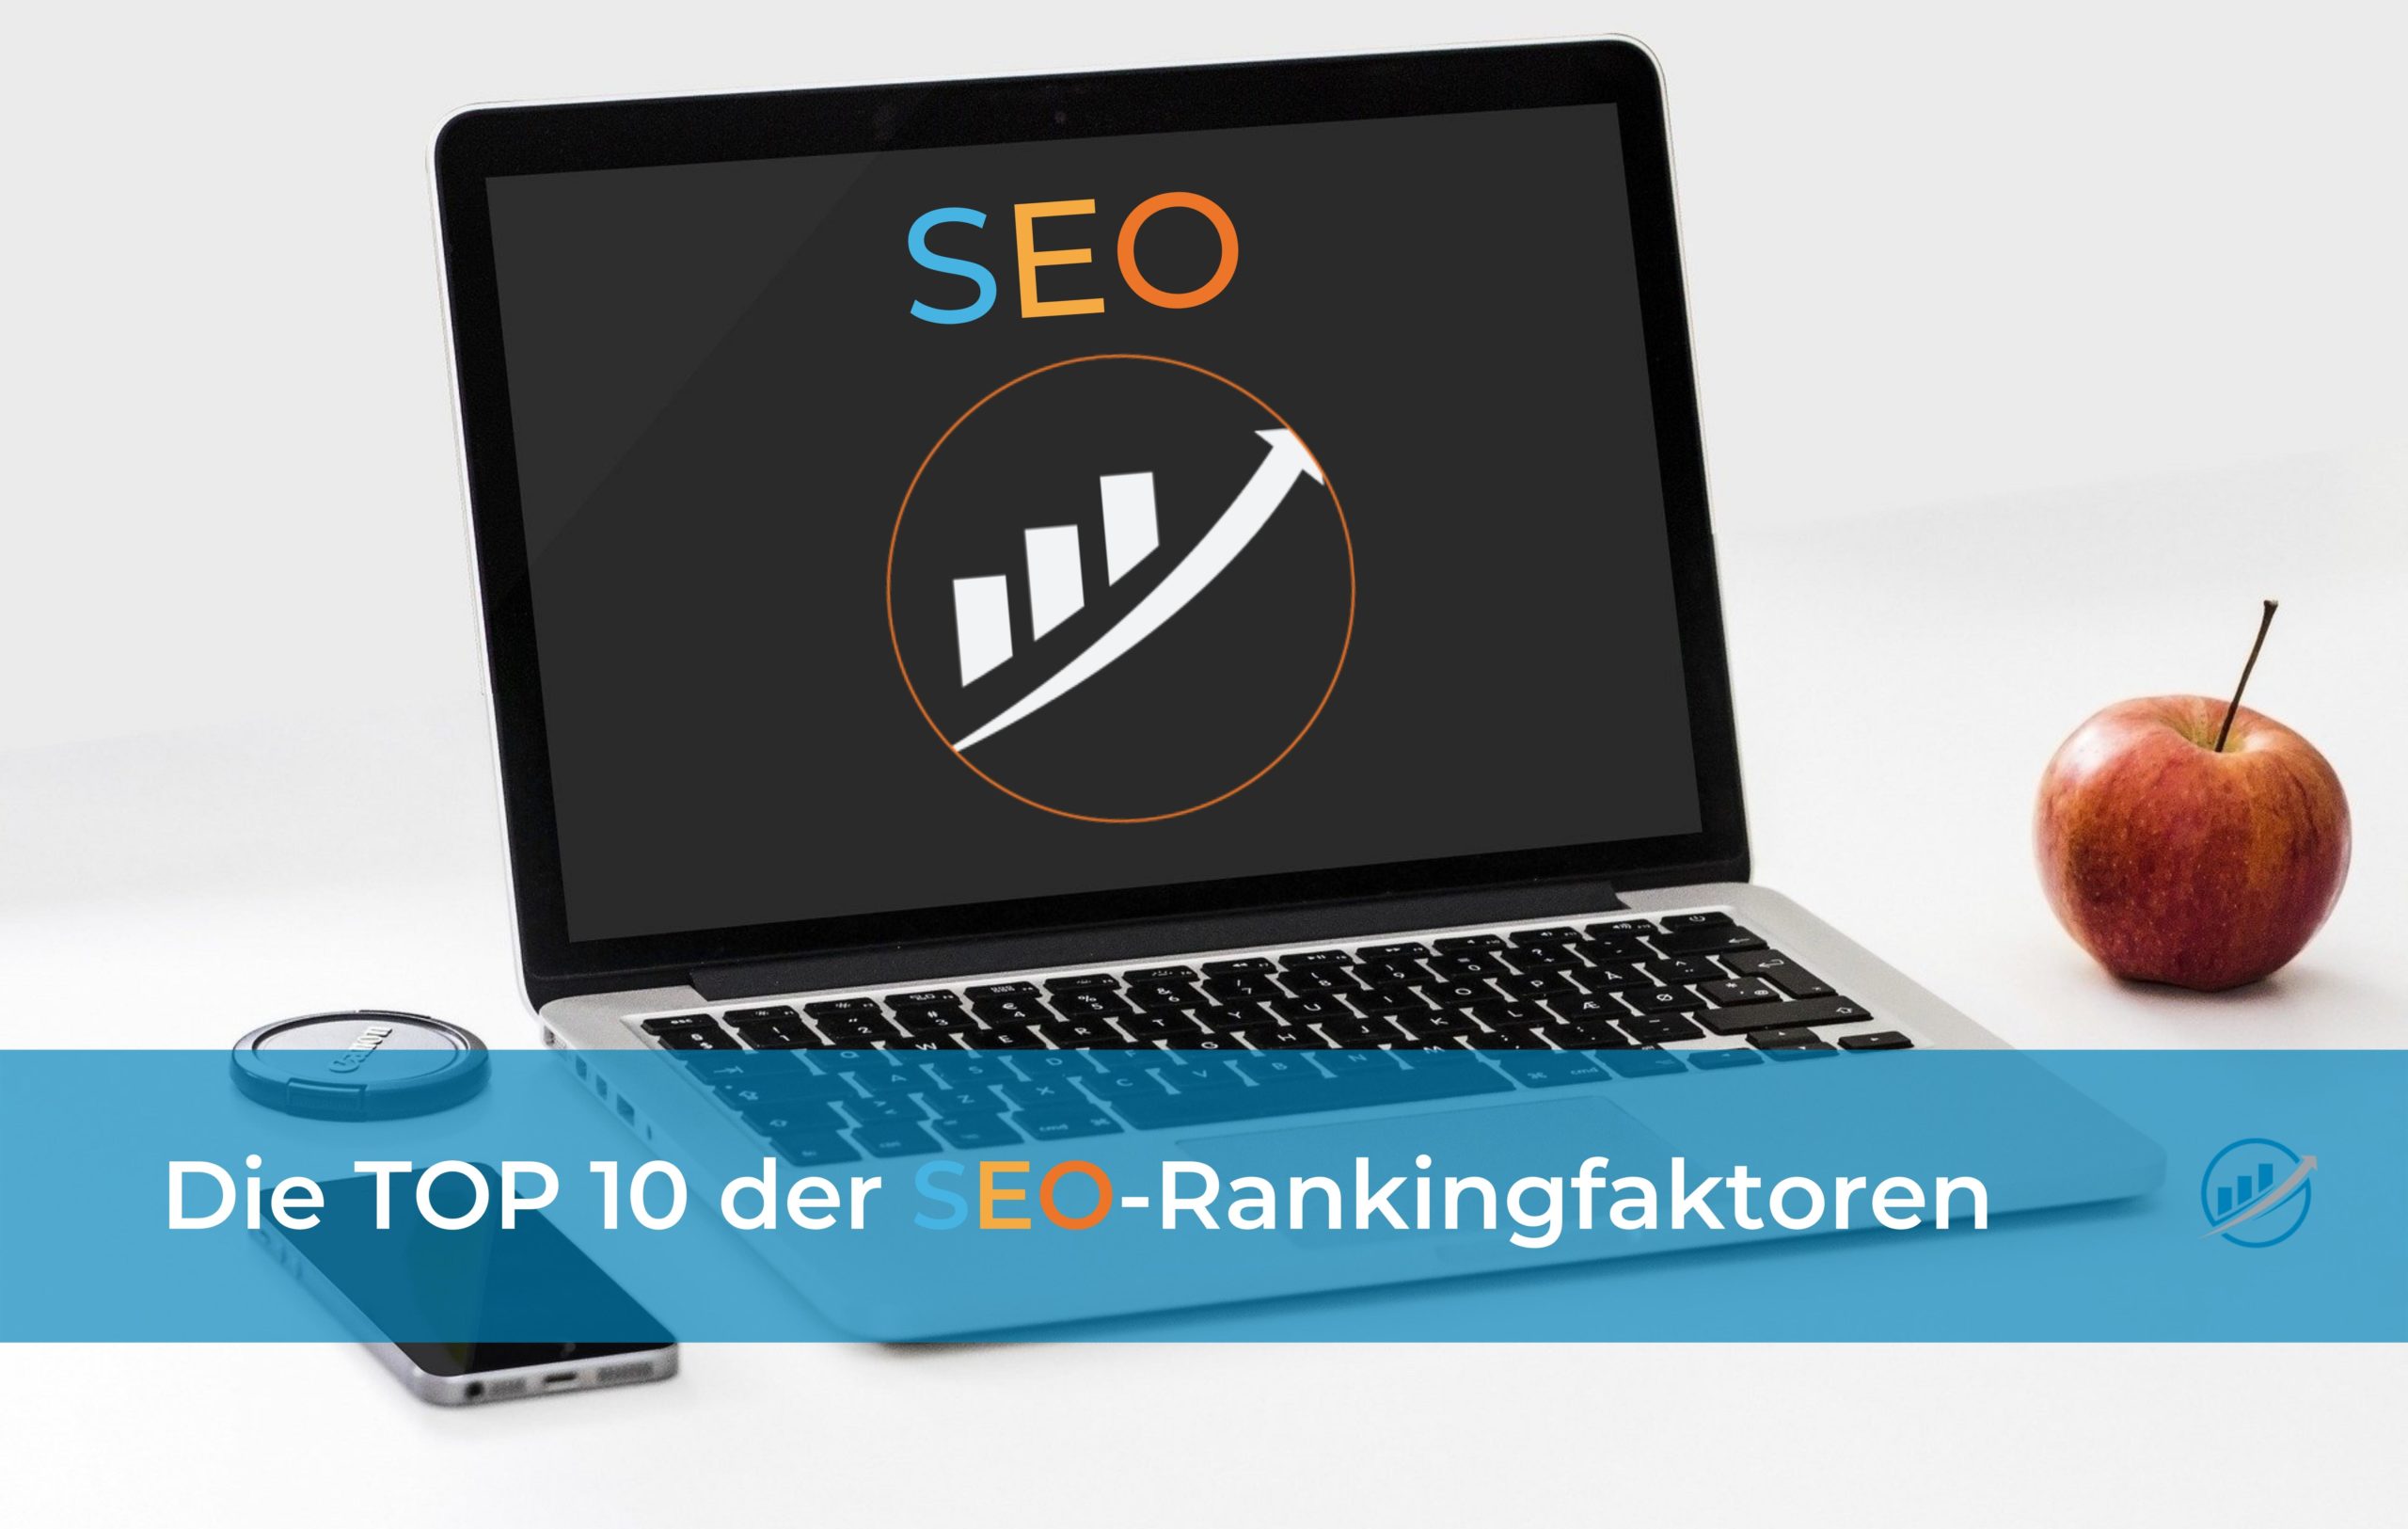 TOP 10 SEO-Rankingfaktoren